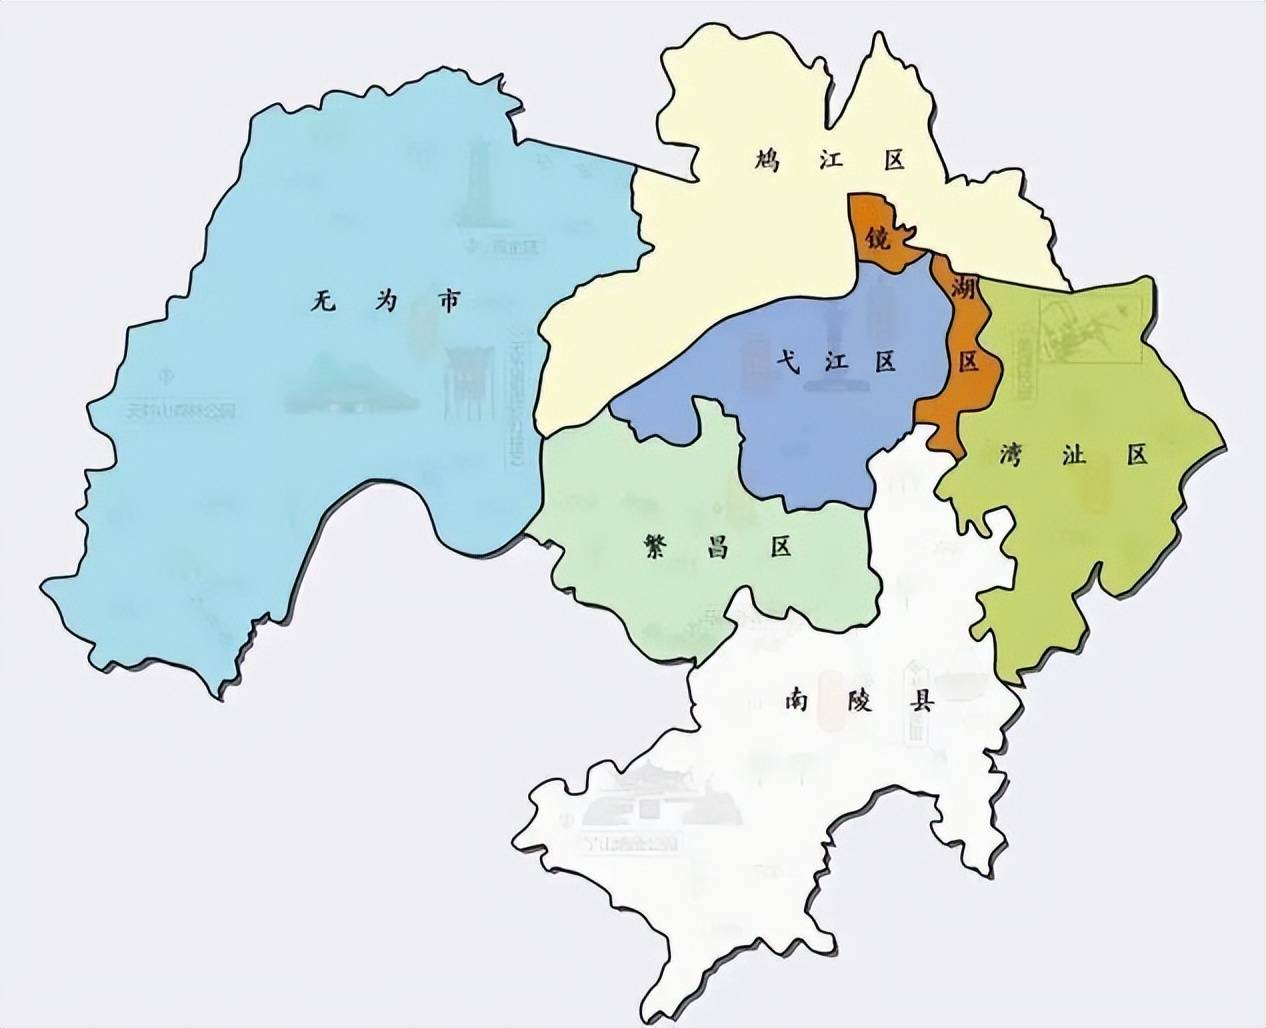 下辖了5个区,1个县,1个县级市,分别是:镜湖区,鸠江区,弋江区,湾沚区